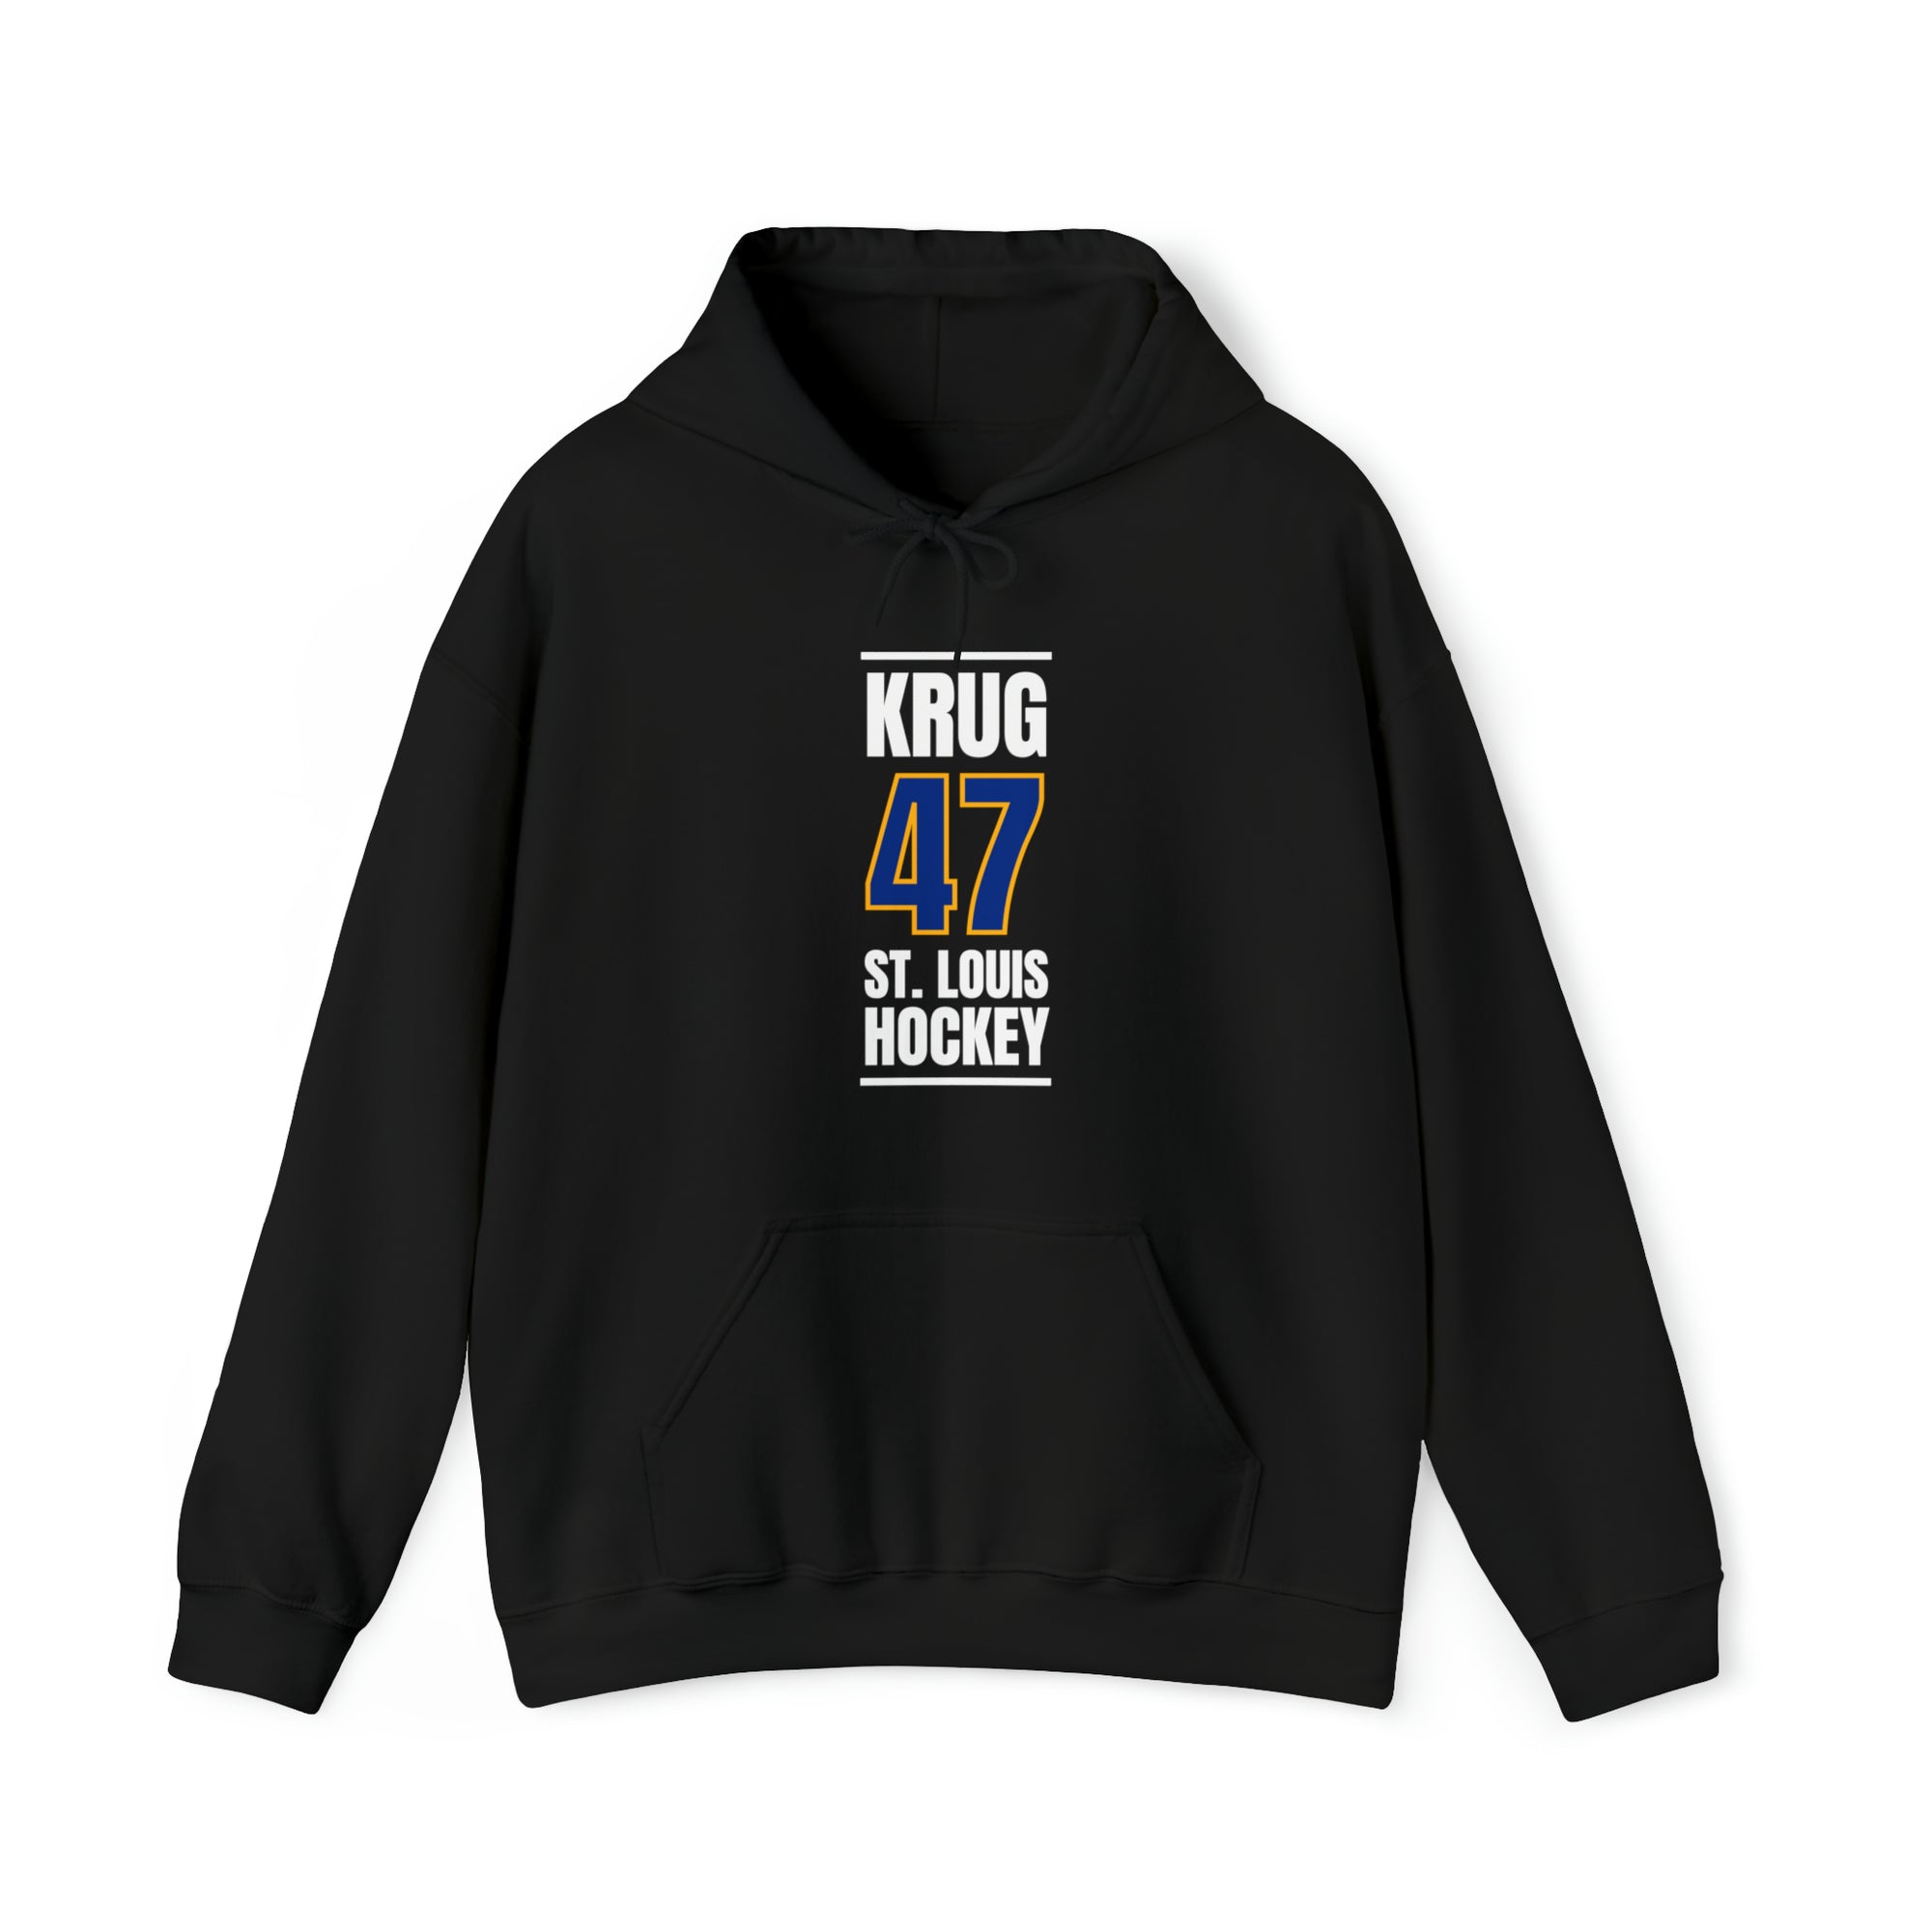 Krug 47 St. Louis Hockey Blue Vertical Design Unisex Hooded Sweatshirt